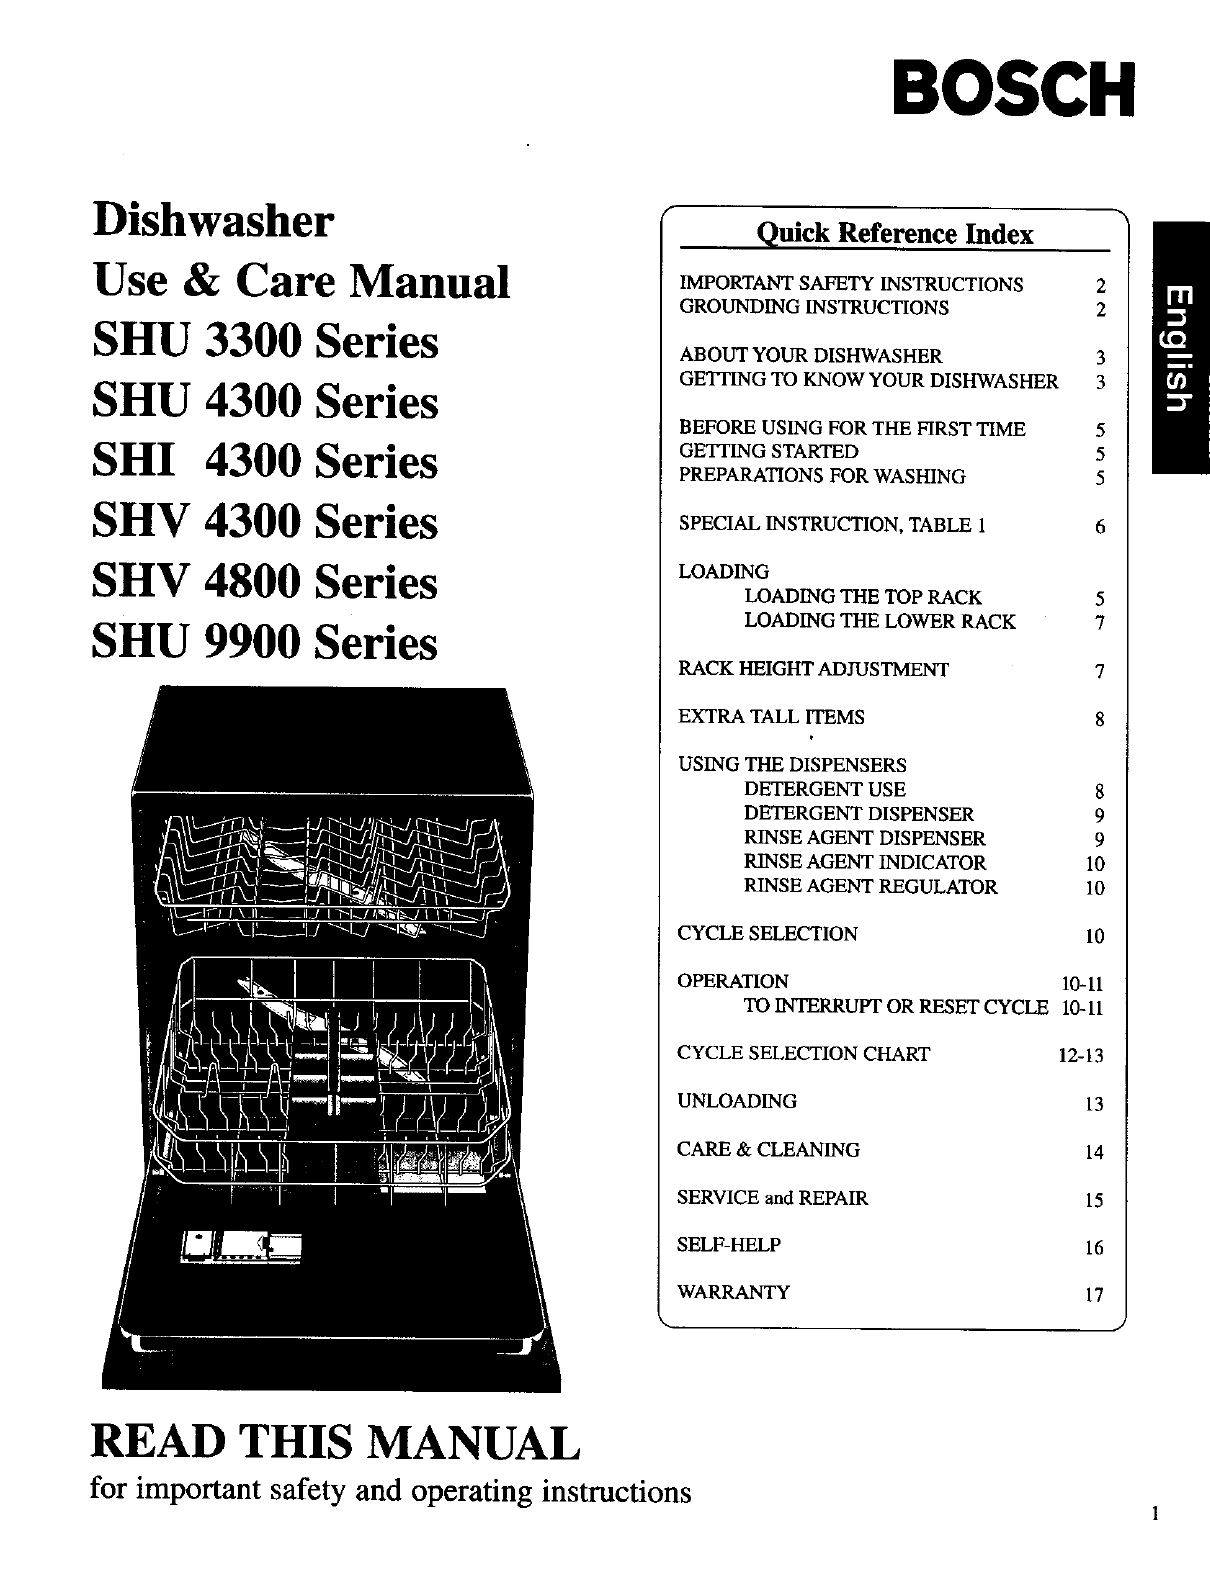 Bosch Manual Dishwasher